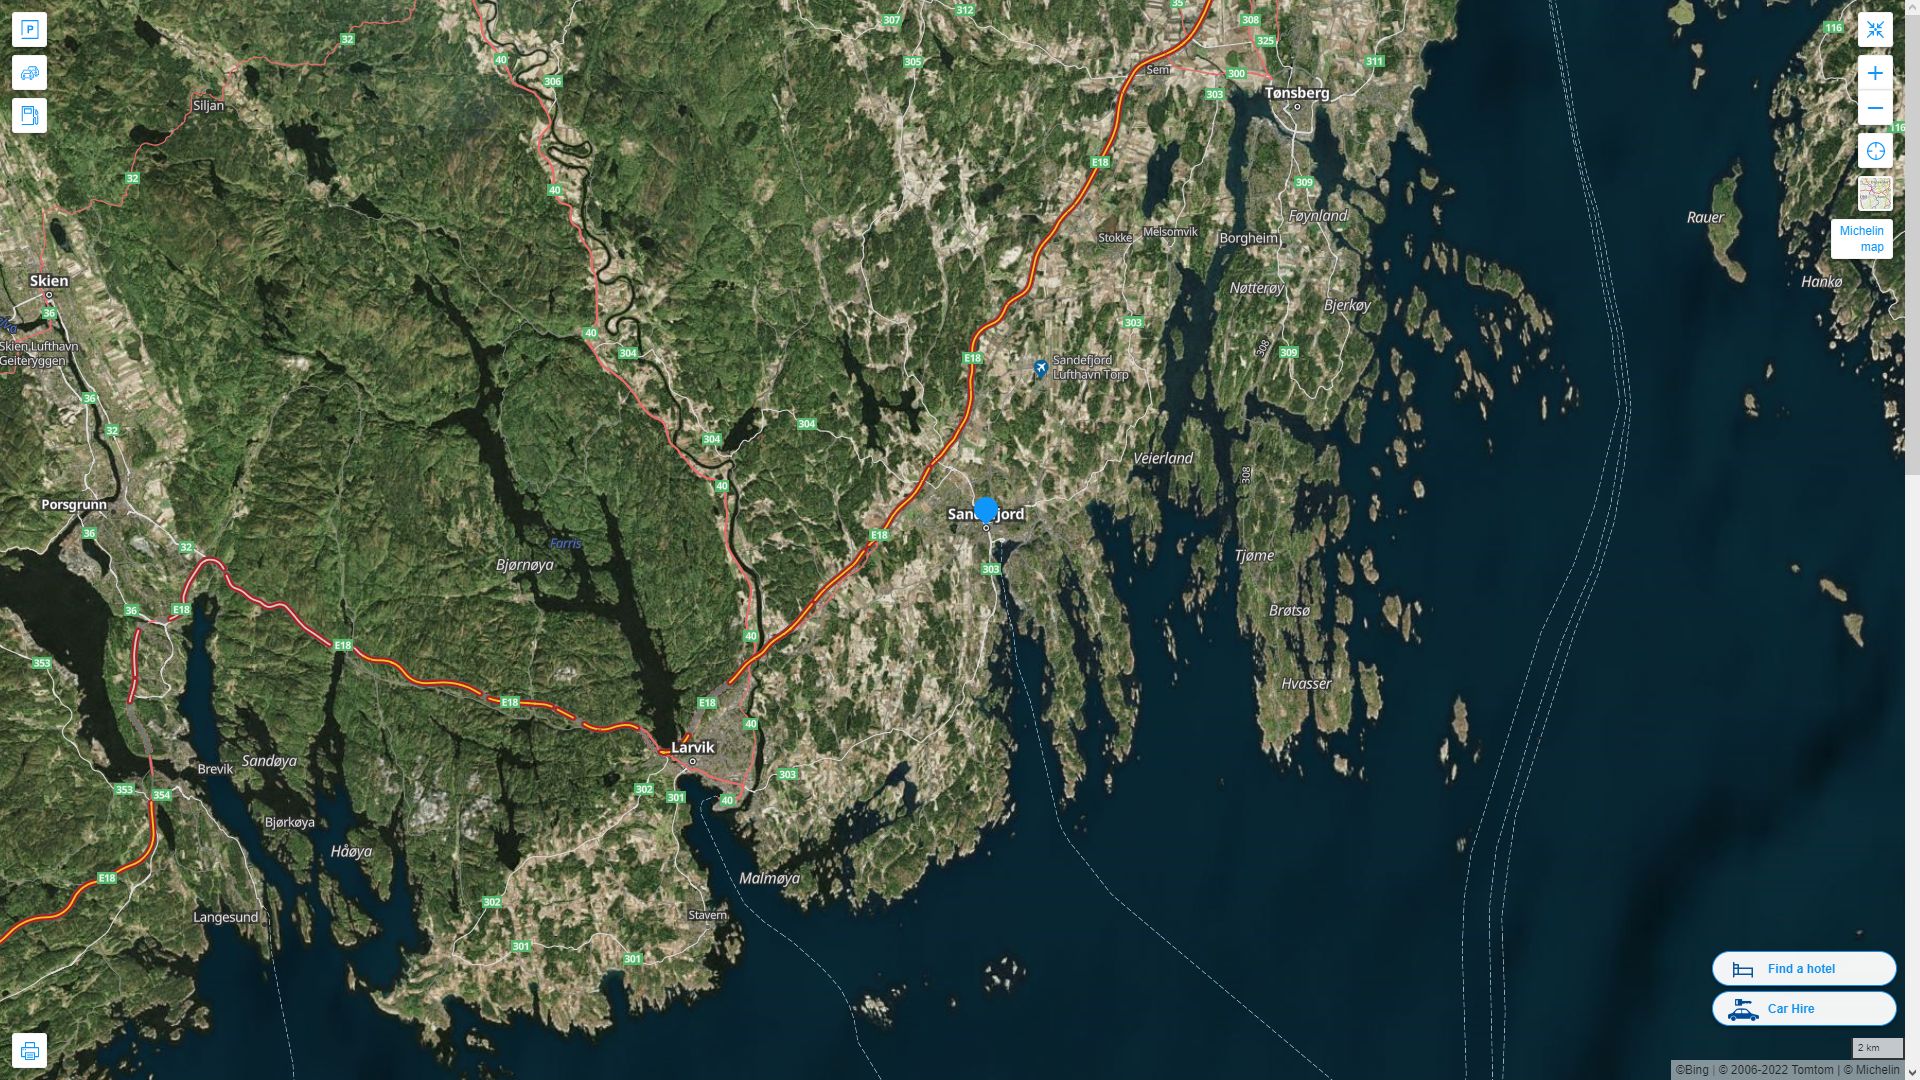 Sandefjord Norvege Autoroute et carte routiere avec vue satellite